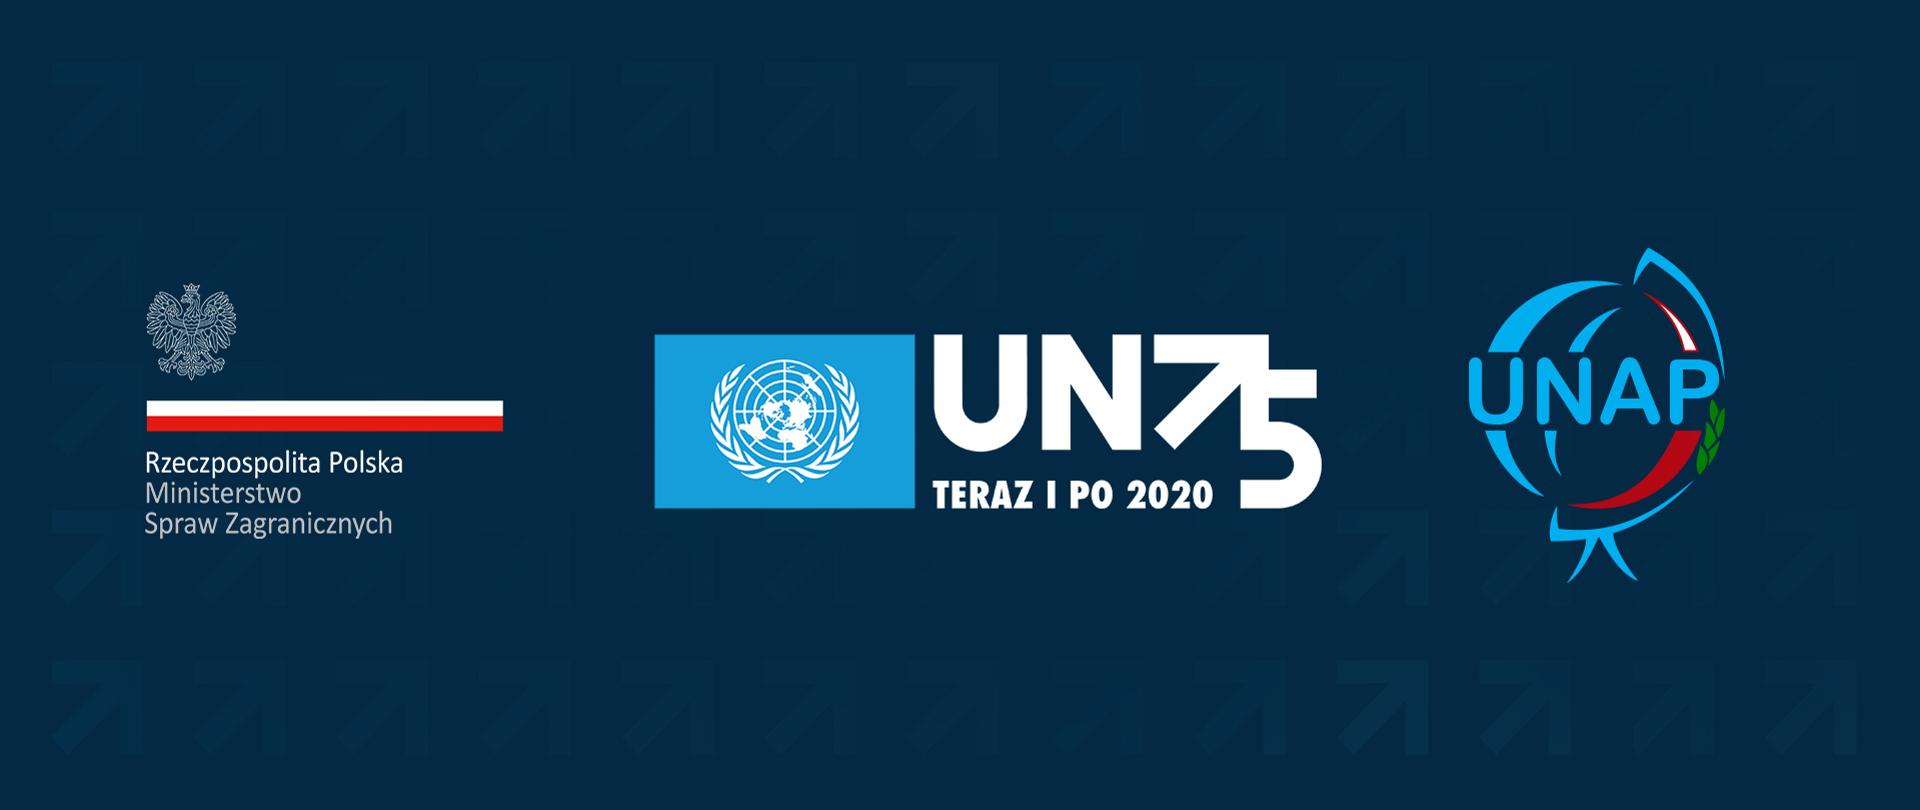 logo ONZ - 75. rocznica